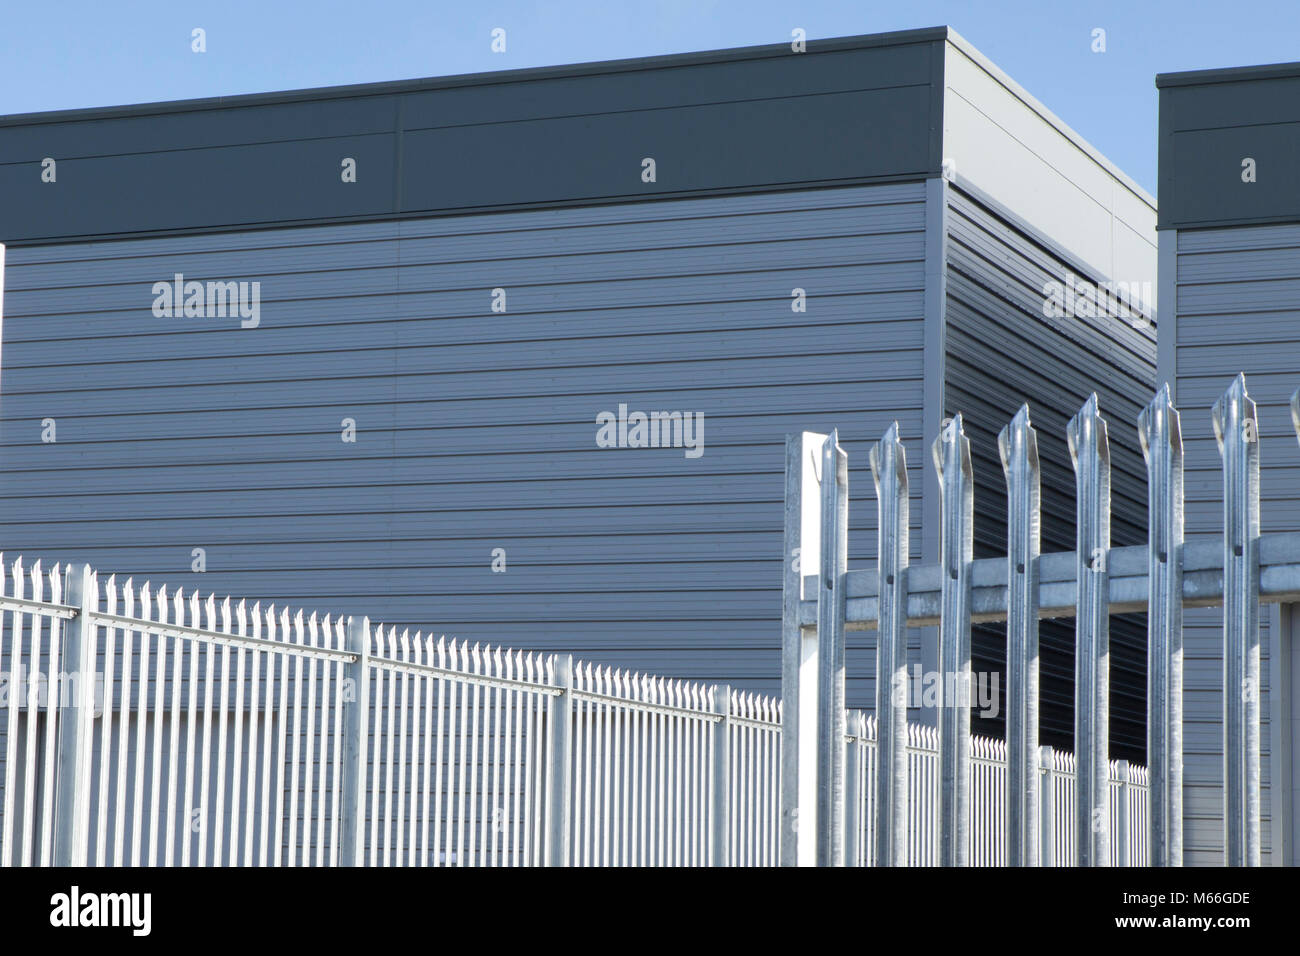 Nouveau dépôt d'entreposage et de bardage métallique de la baie de chargement et le ciel bleu du graphique, une clôture de sécurité à l'angle. Banque D'Images